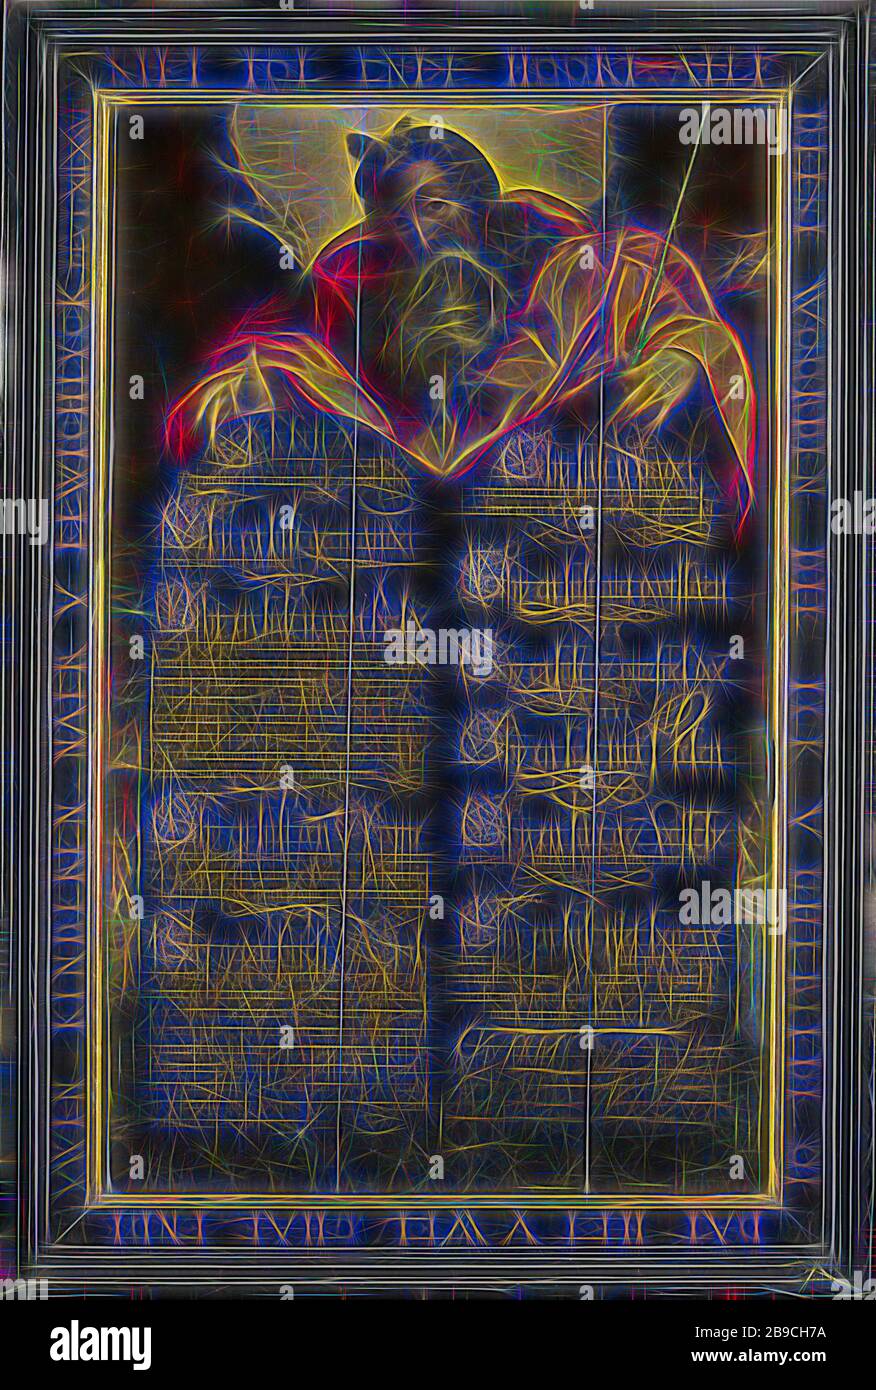 Moisés mostrando las tablas de la ley con los Diez Mandamientos en la  caligrafía, Diez Mandamientos Board: las tablas de la ley con los Diez  Mandamientos aparecen en la secuencia de comandos